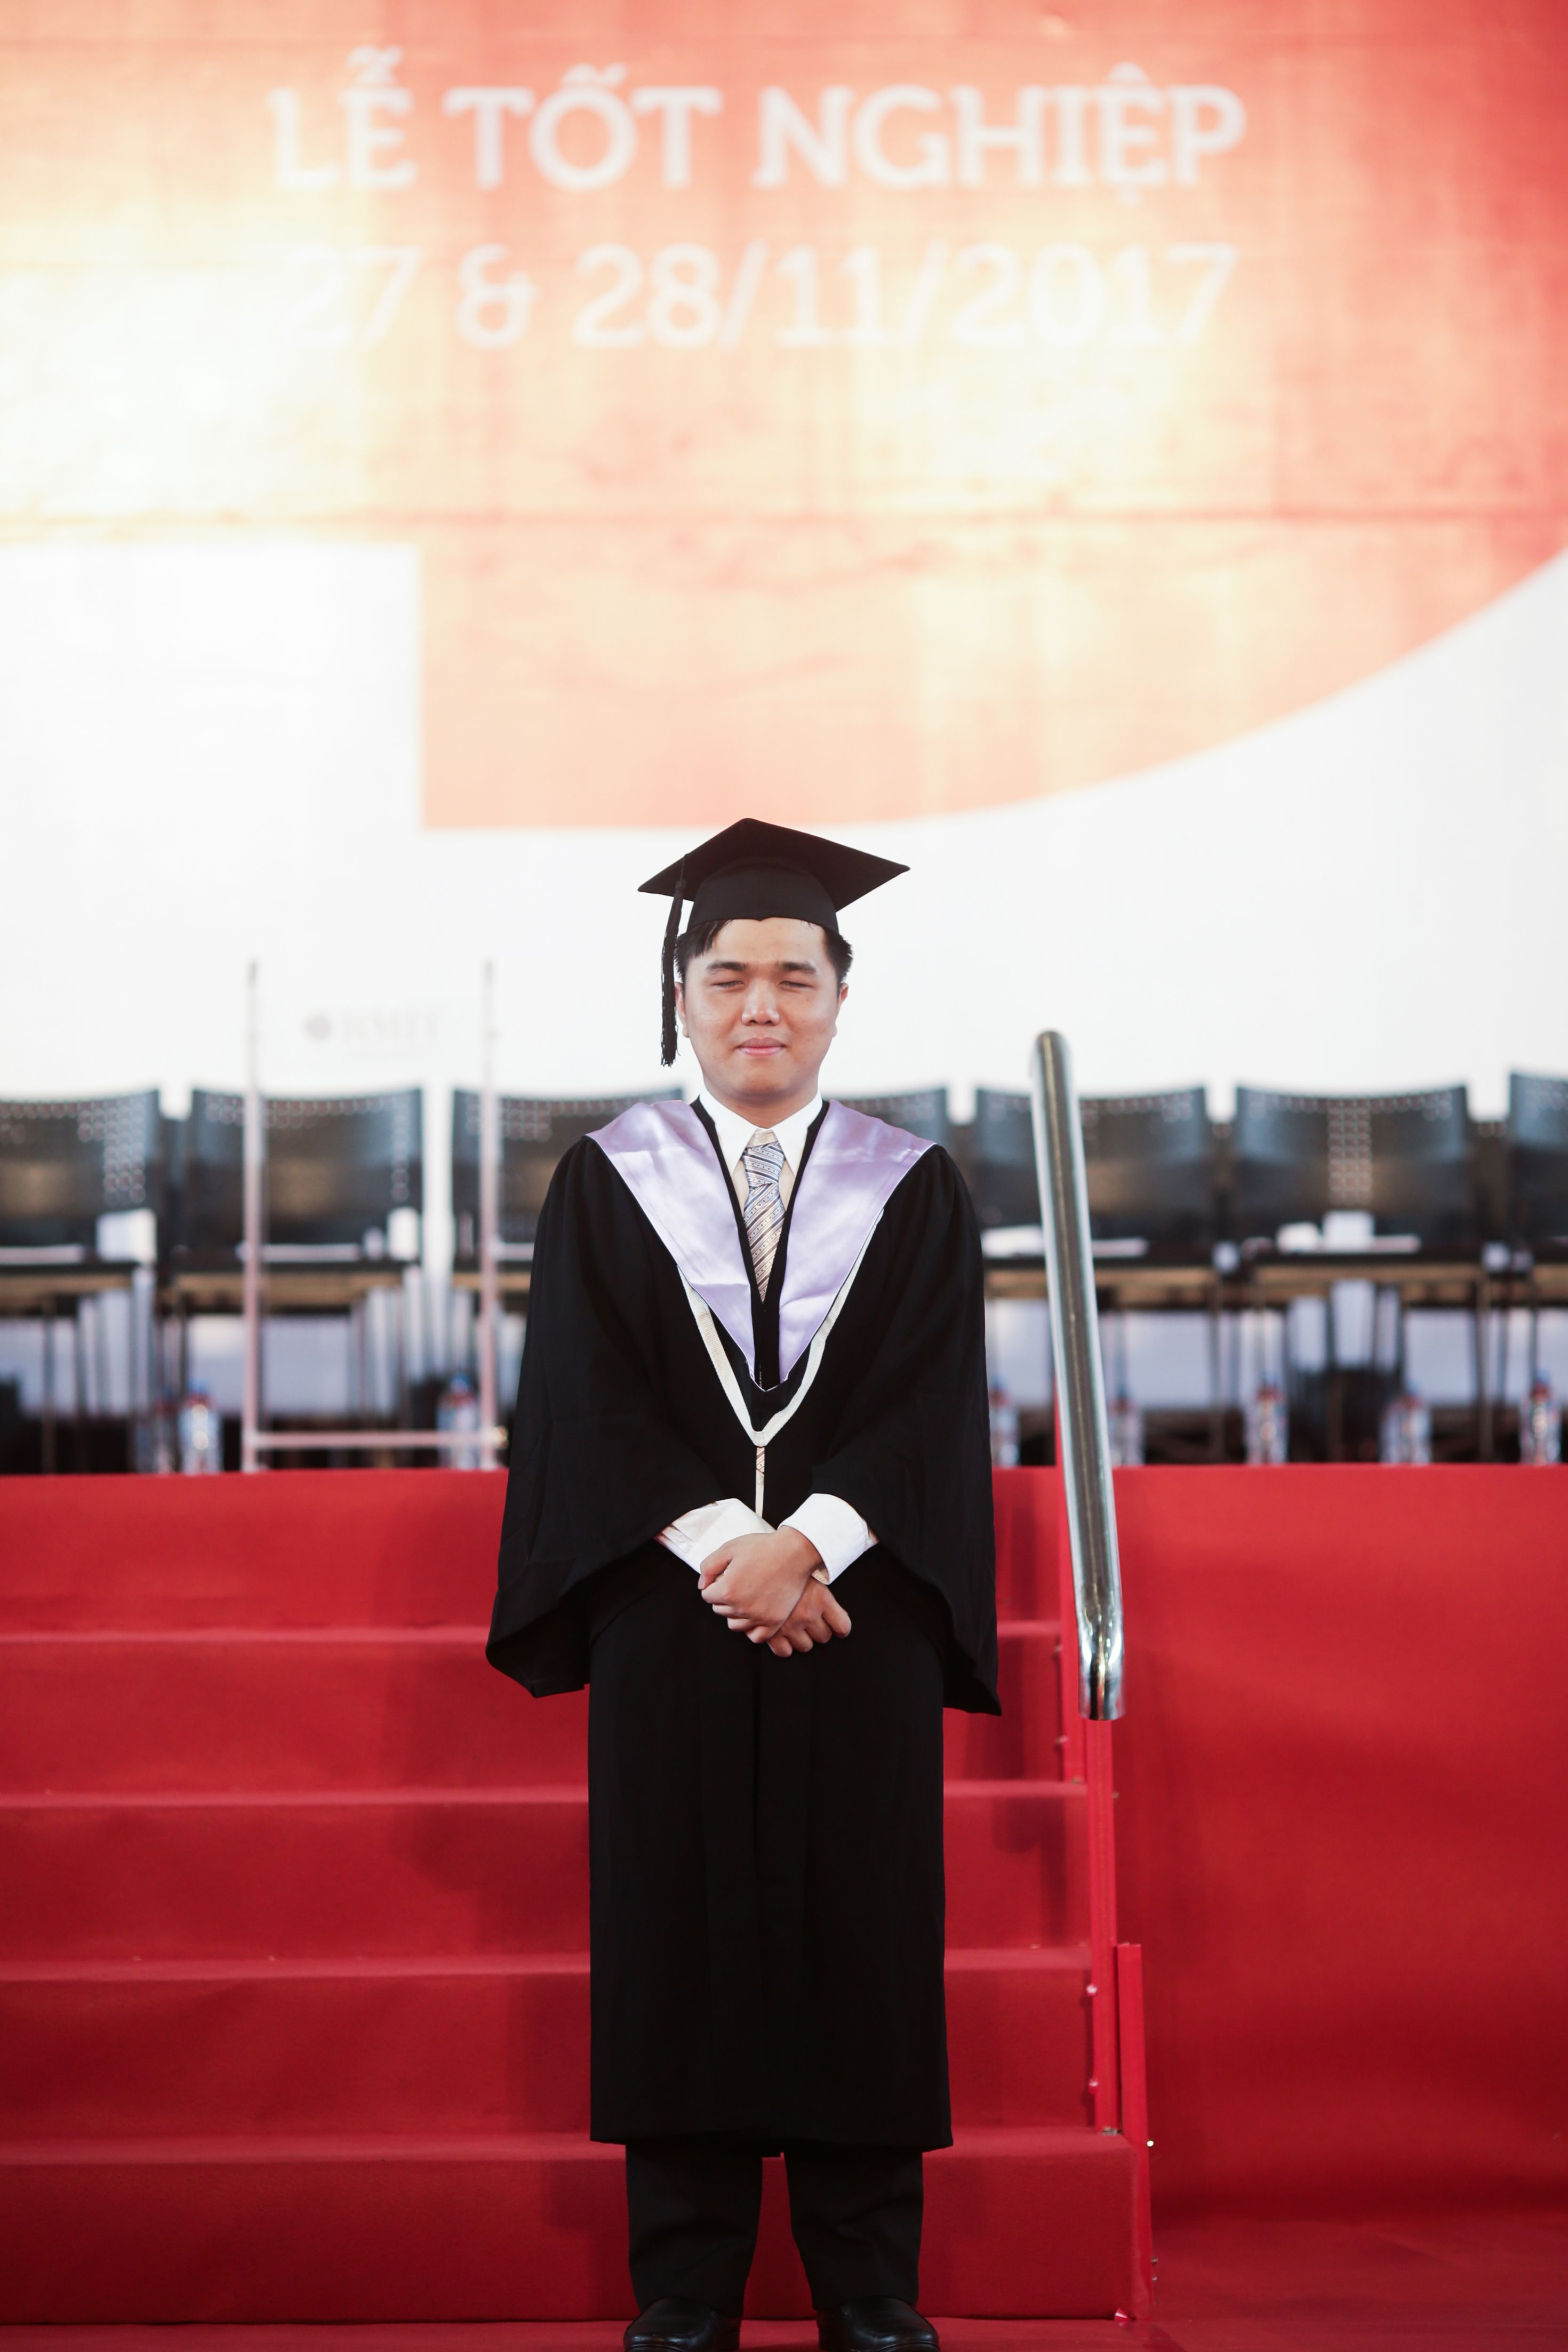 Nguyễn Tuấn Tú tốt nghiệp loại Giỏi ngành Cử nhân Kinh doanh (Hệ thống thông tin trong kinh doanh).